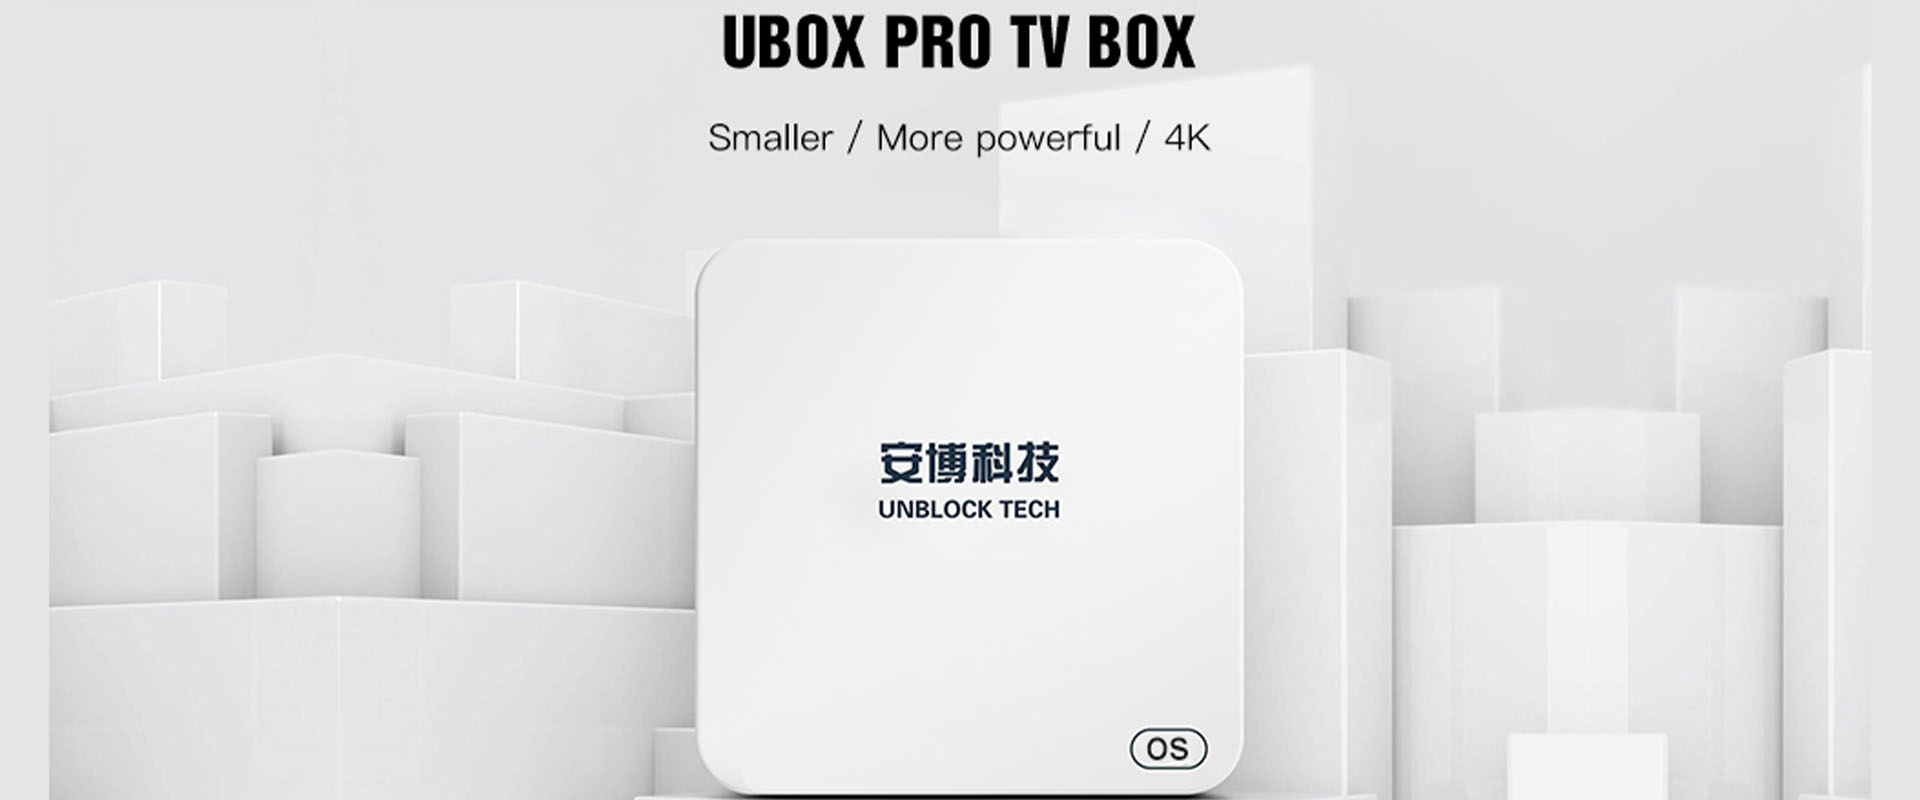 Ubox5 Pro 電視盒 - Unblock Tech 最新版本 UBOX Gen 5 Pro Max